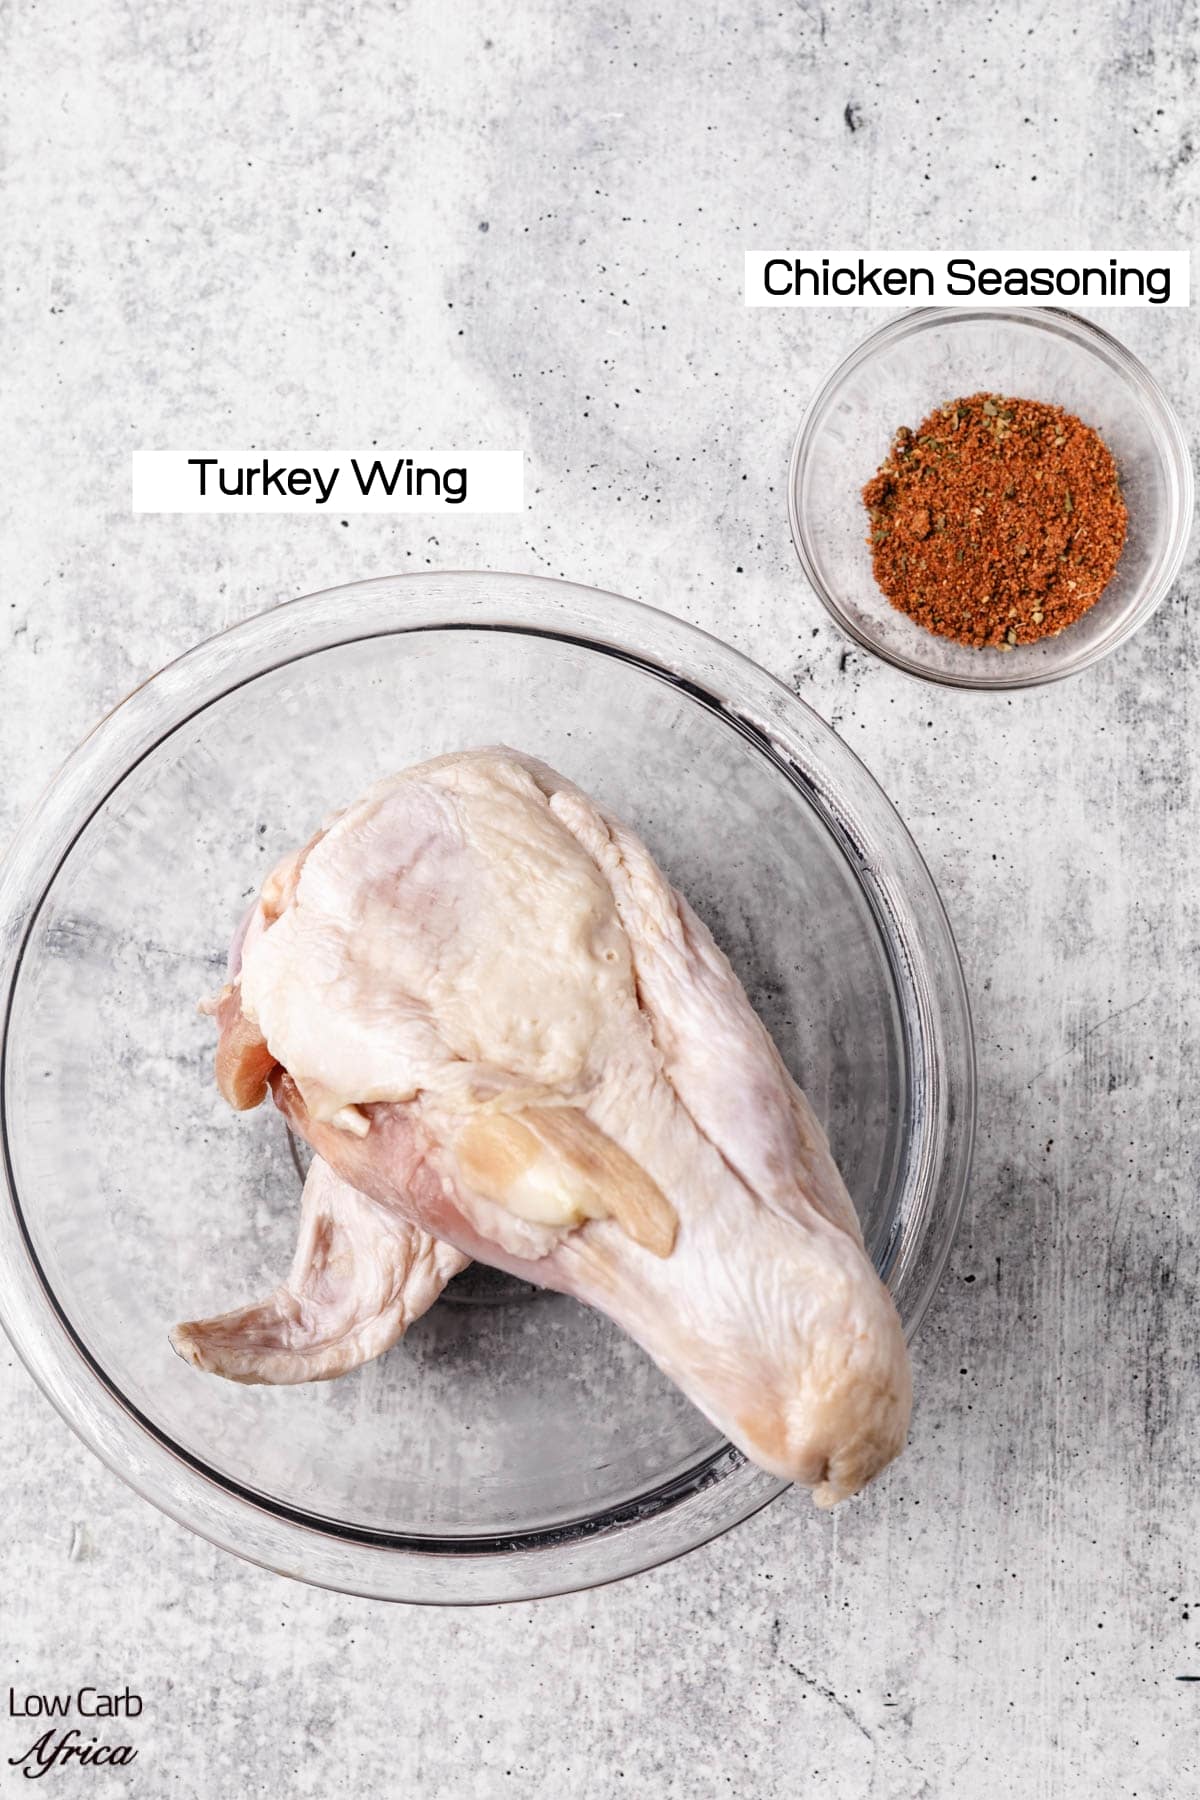 Fried Turkey Wings - ingredients